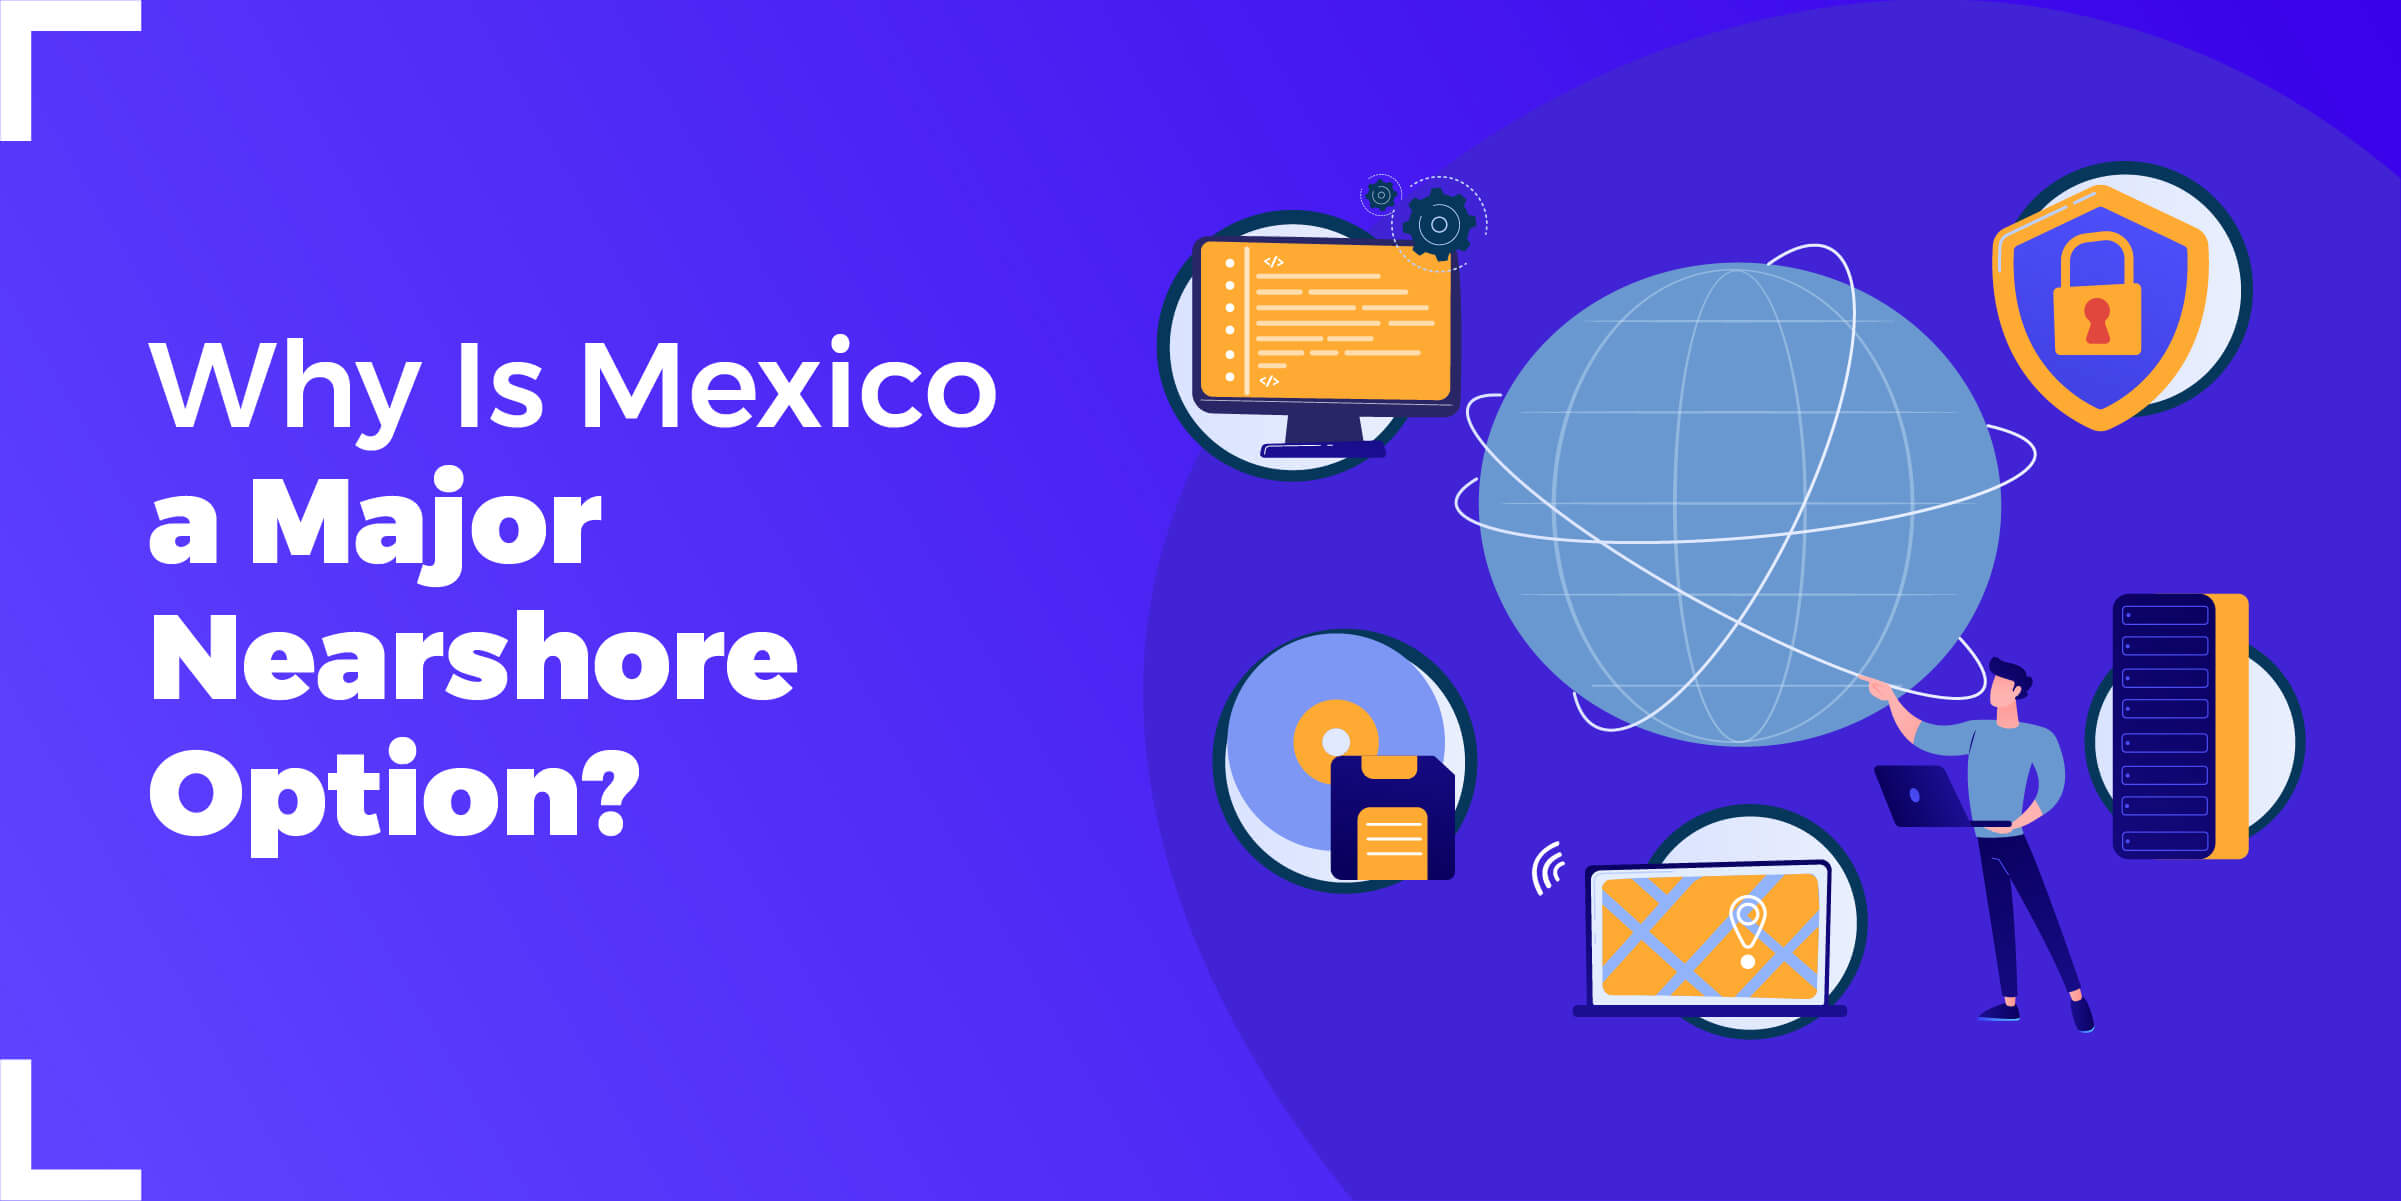 Why Mexico Major Nearshore Option